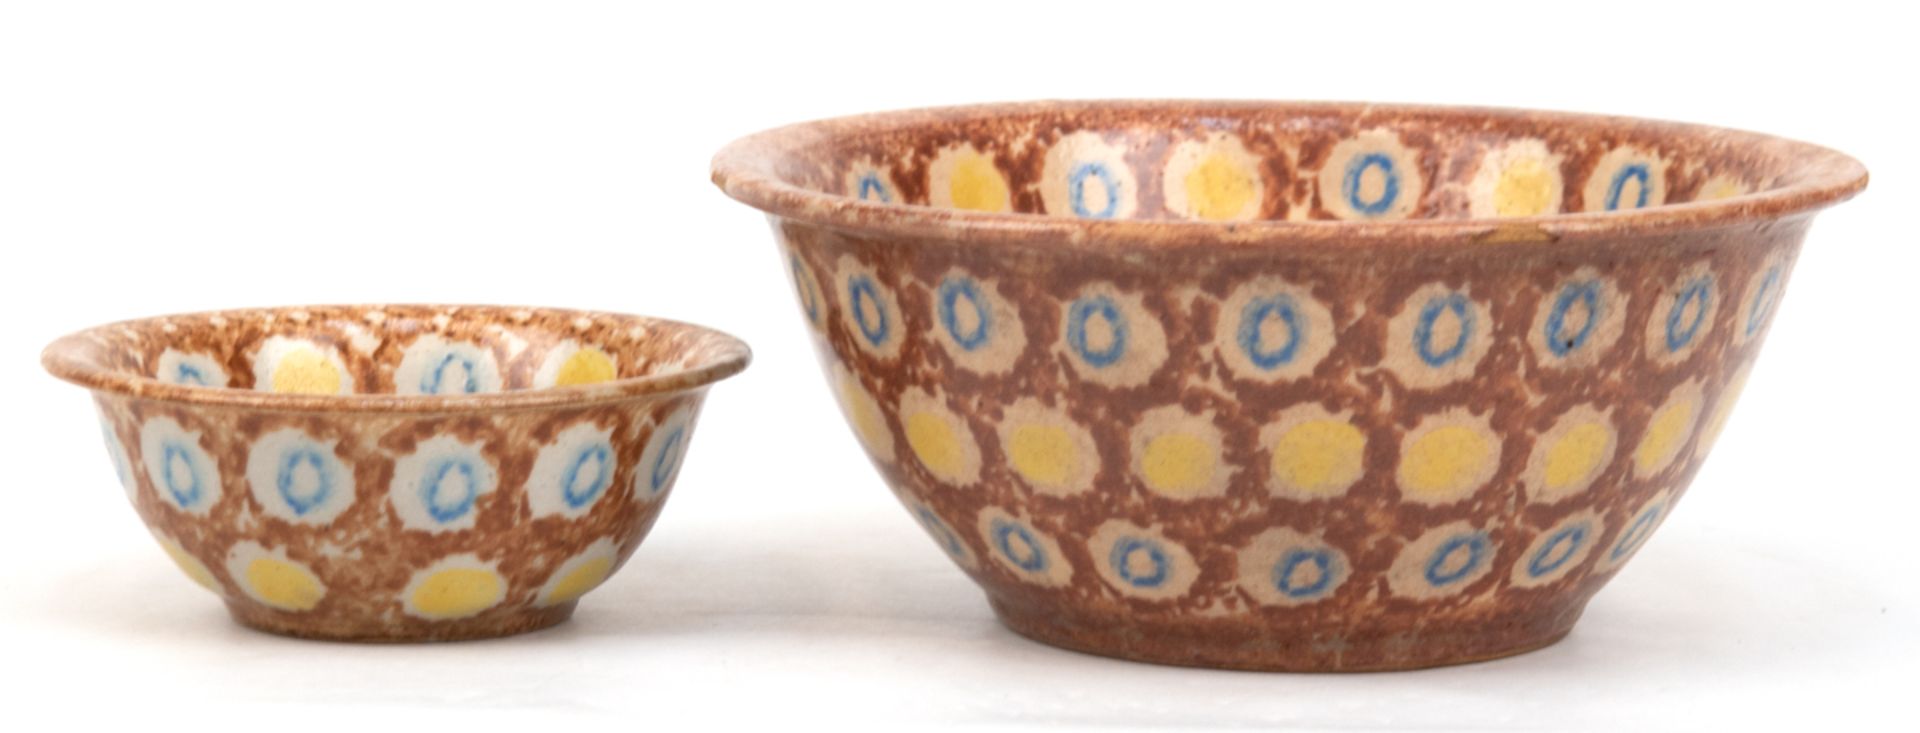 2 Bunzlauer Schalen, Keramik mit braun/gelb/blauem Schwämmeldekor, jeweils mit ausgestelltem Rand,